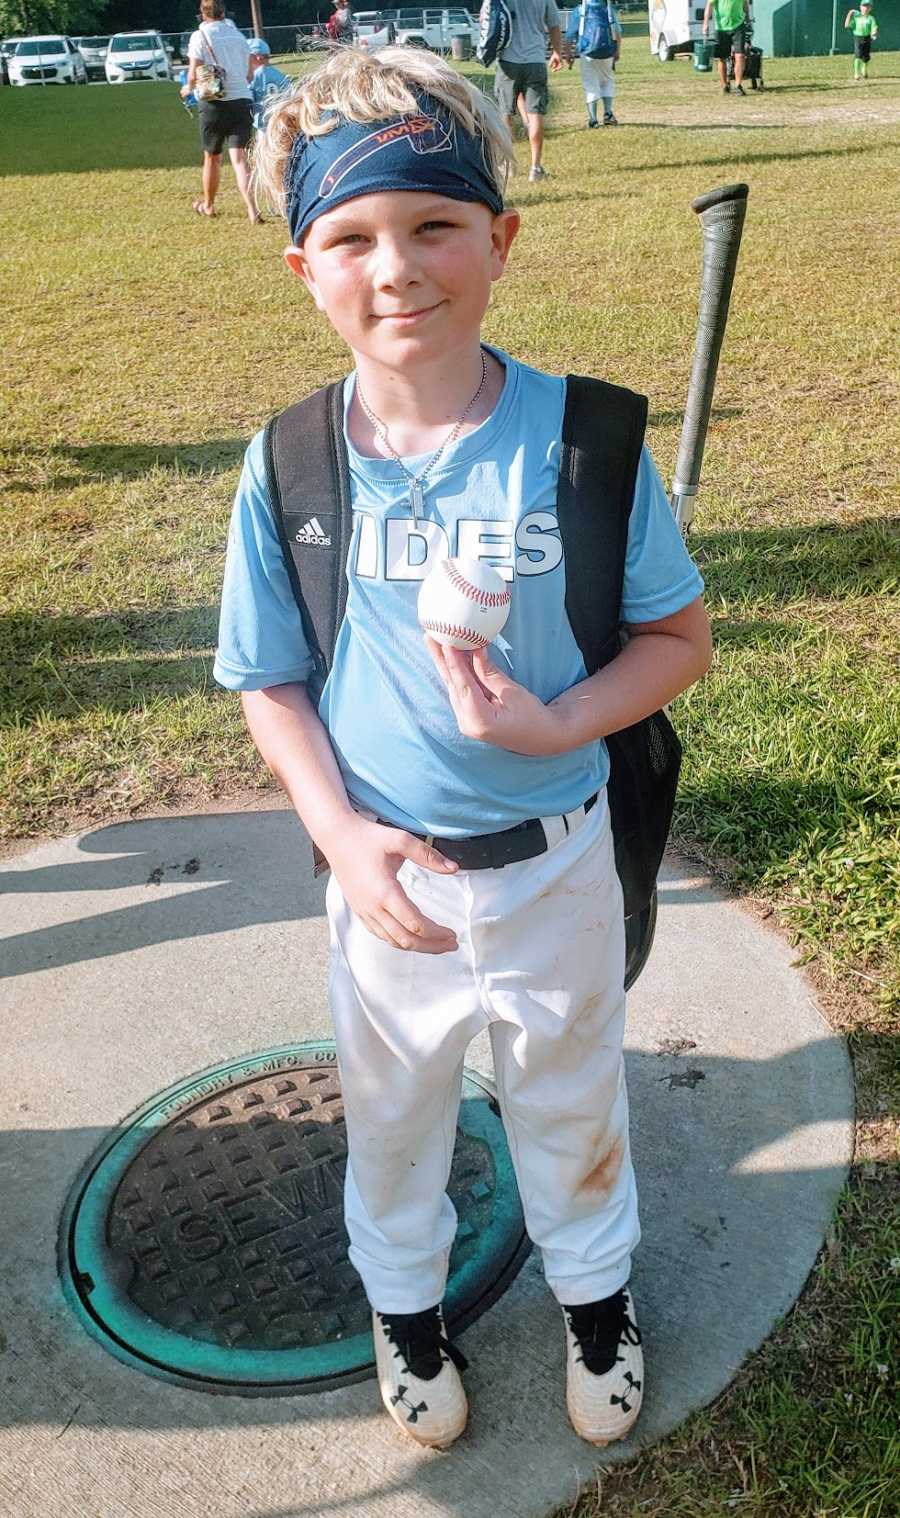 A boy holds a baseball whole wearing his baseball uniform